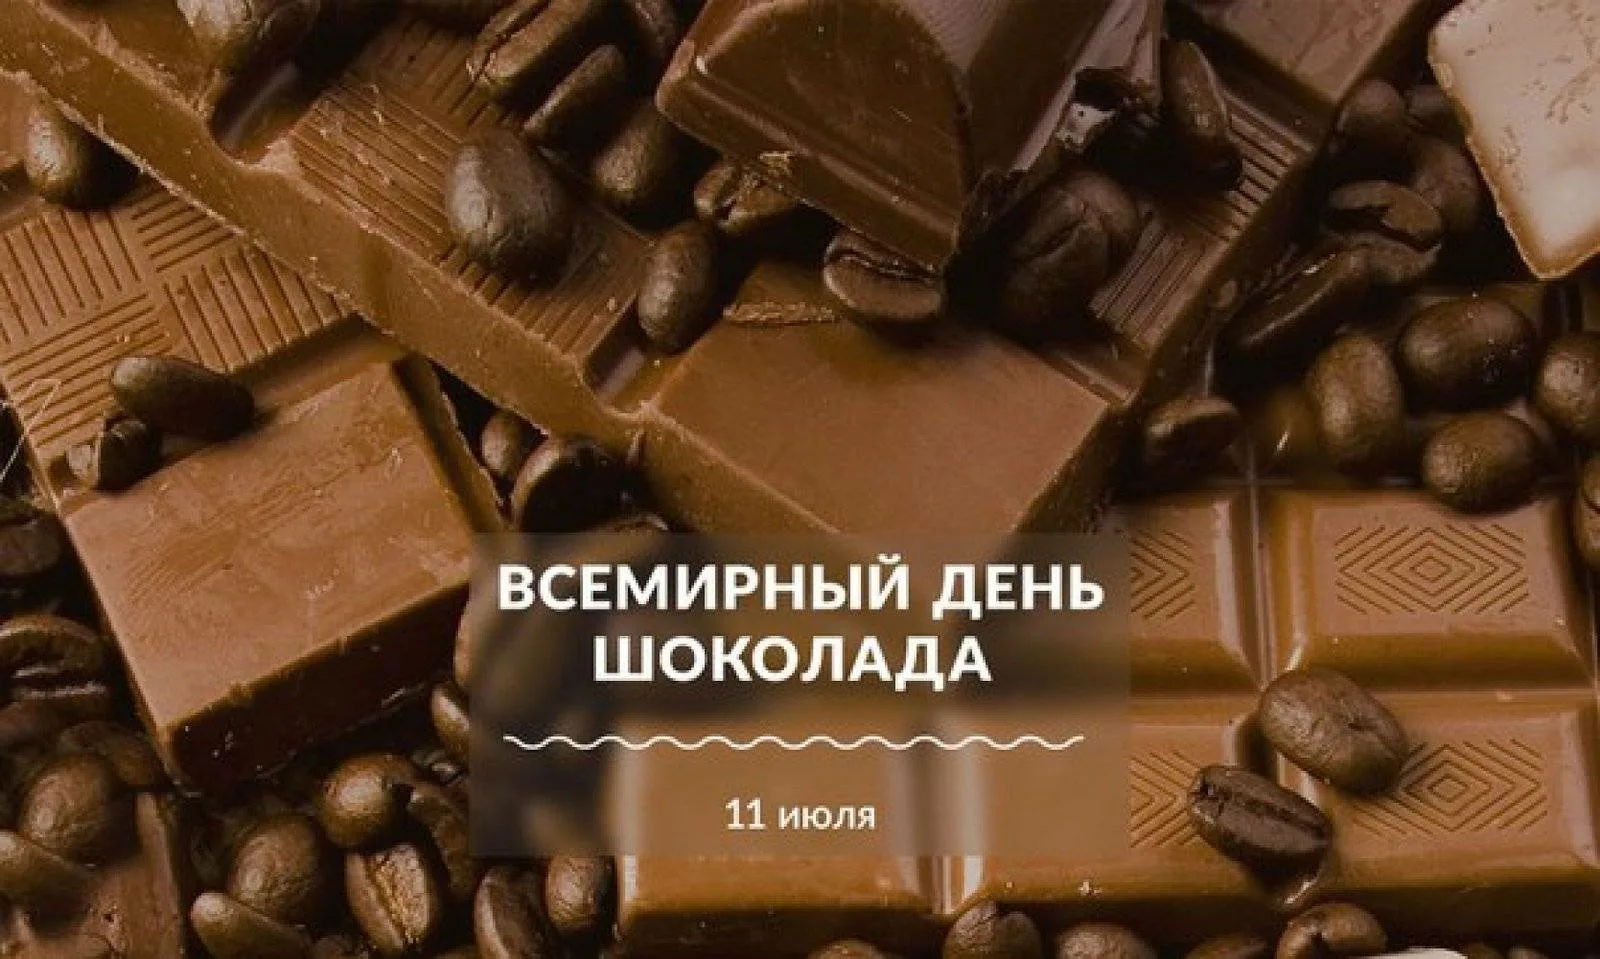 Всемирный день шоколада. Всемирный день шоколада 11 июля. 11 Июля день шоколада. 11 Июля шоколад. Шоколаде великие